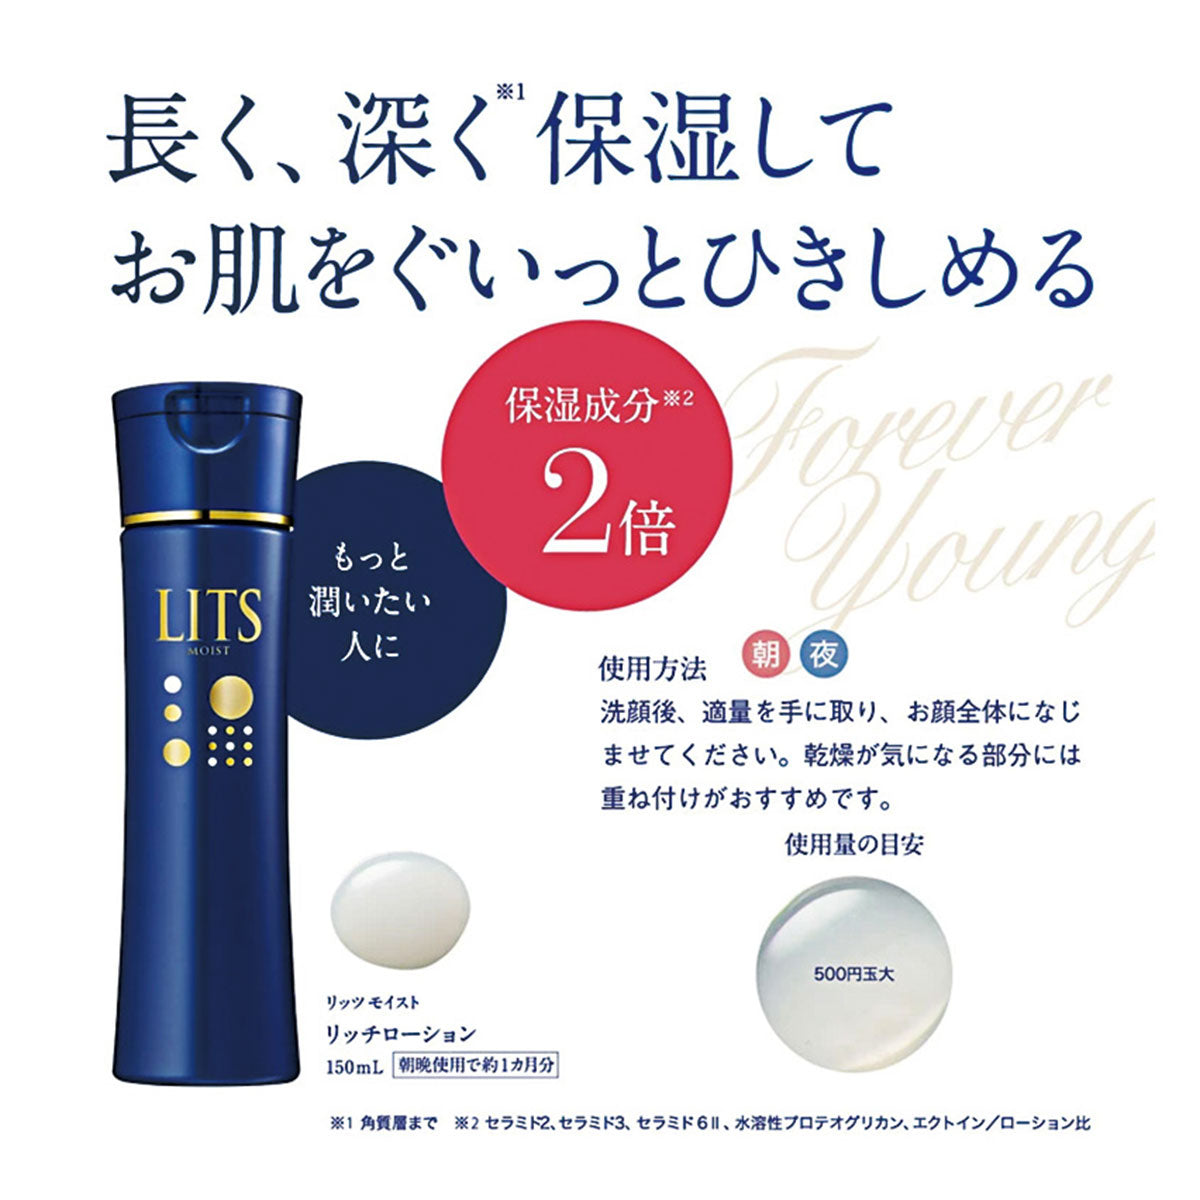 日本LITS护肤滋润乳液 150ml